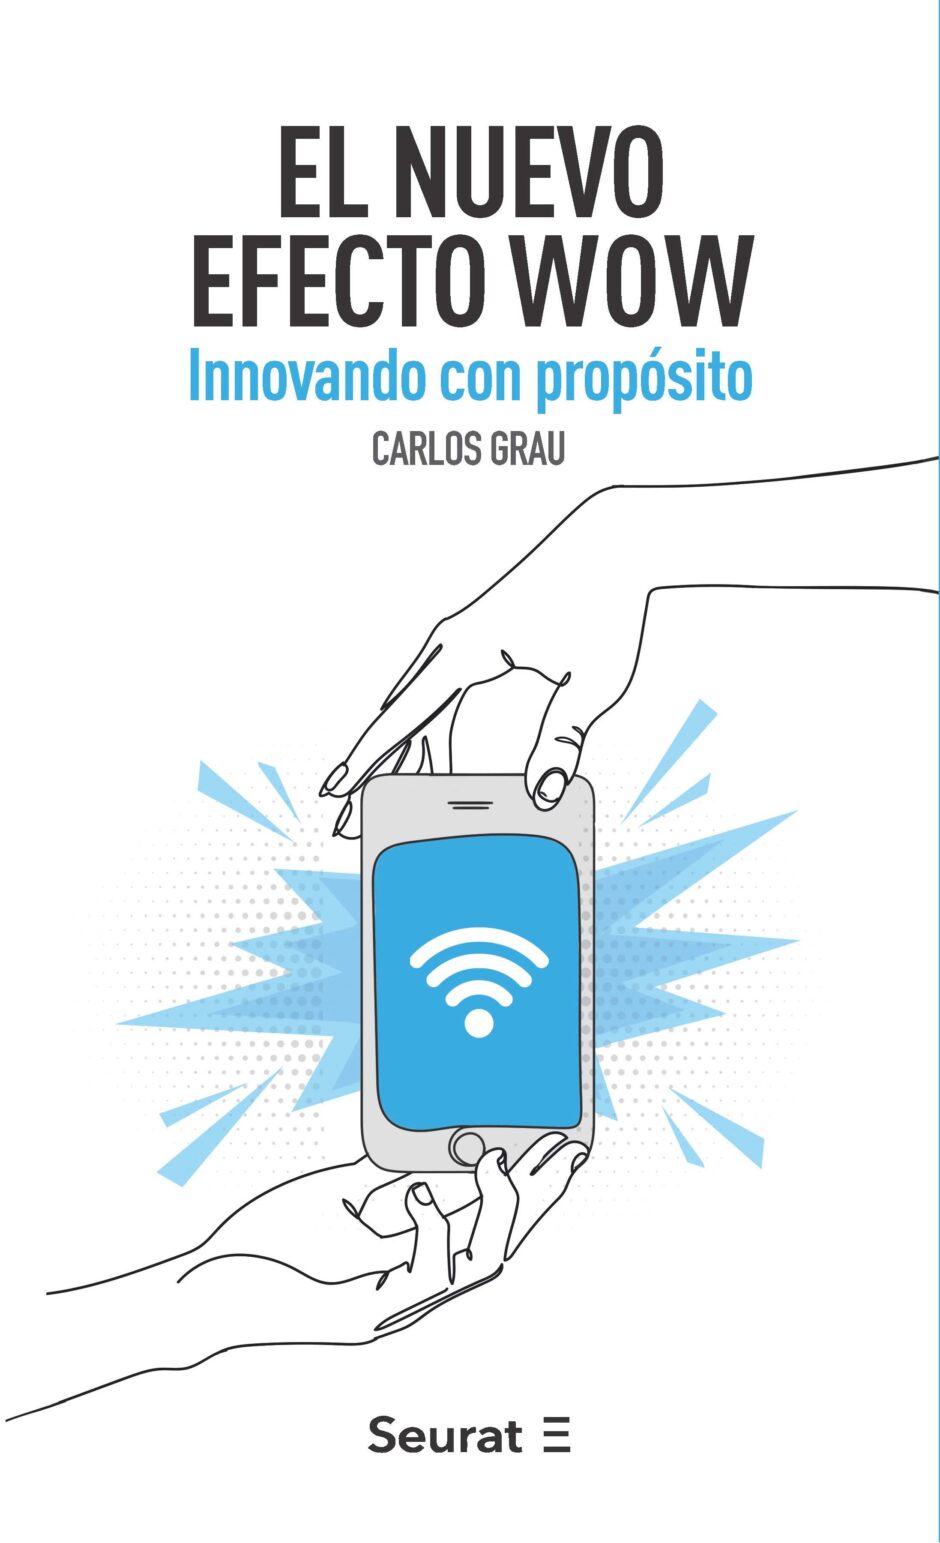 Carlos Grau ofrece en El nuevo efecto WOW una brújula para innovar con propósito